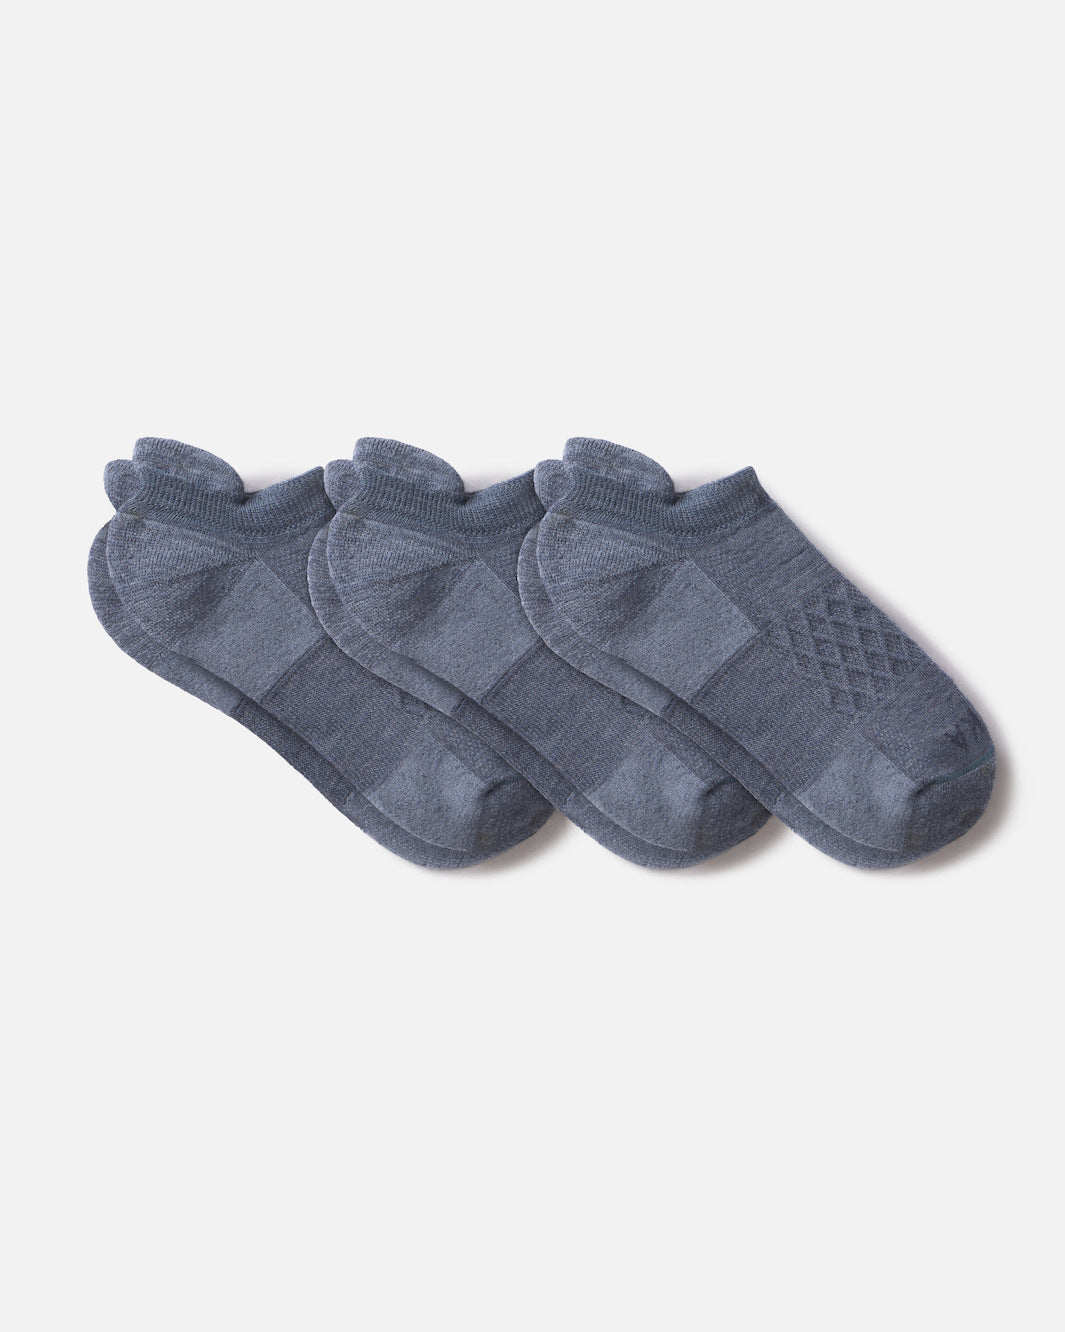 3 pairs of blue color alpaca wool ankle socks